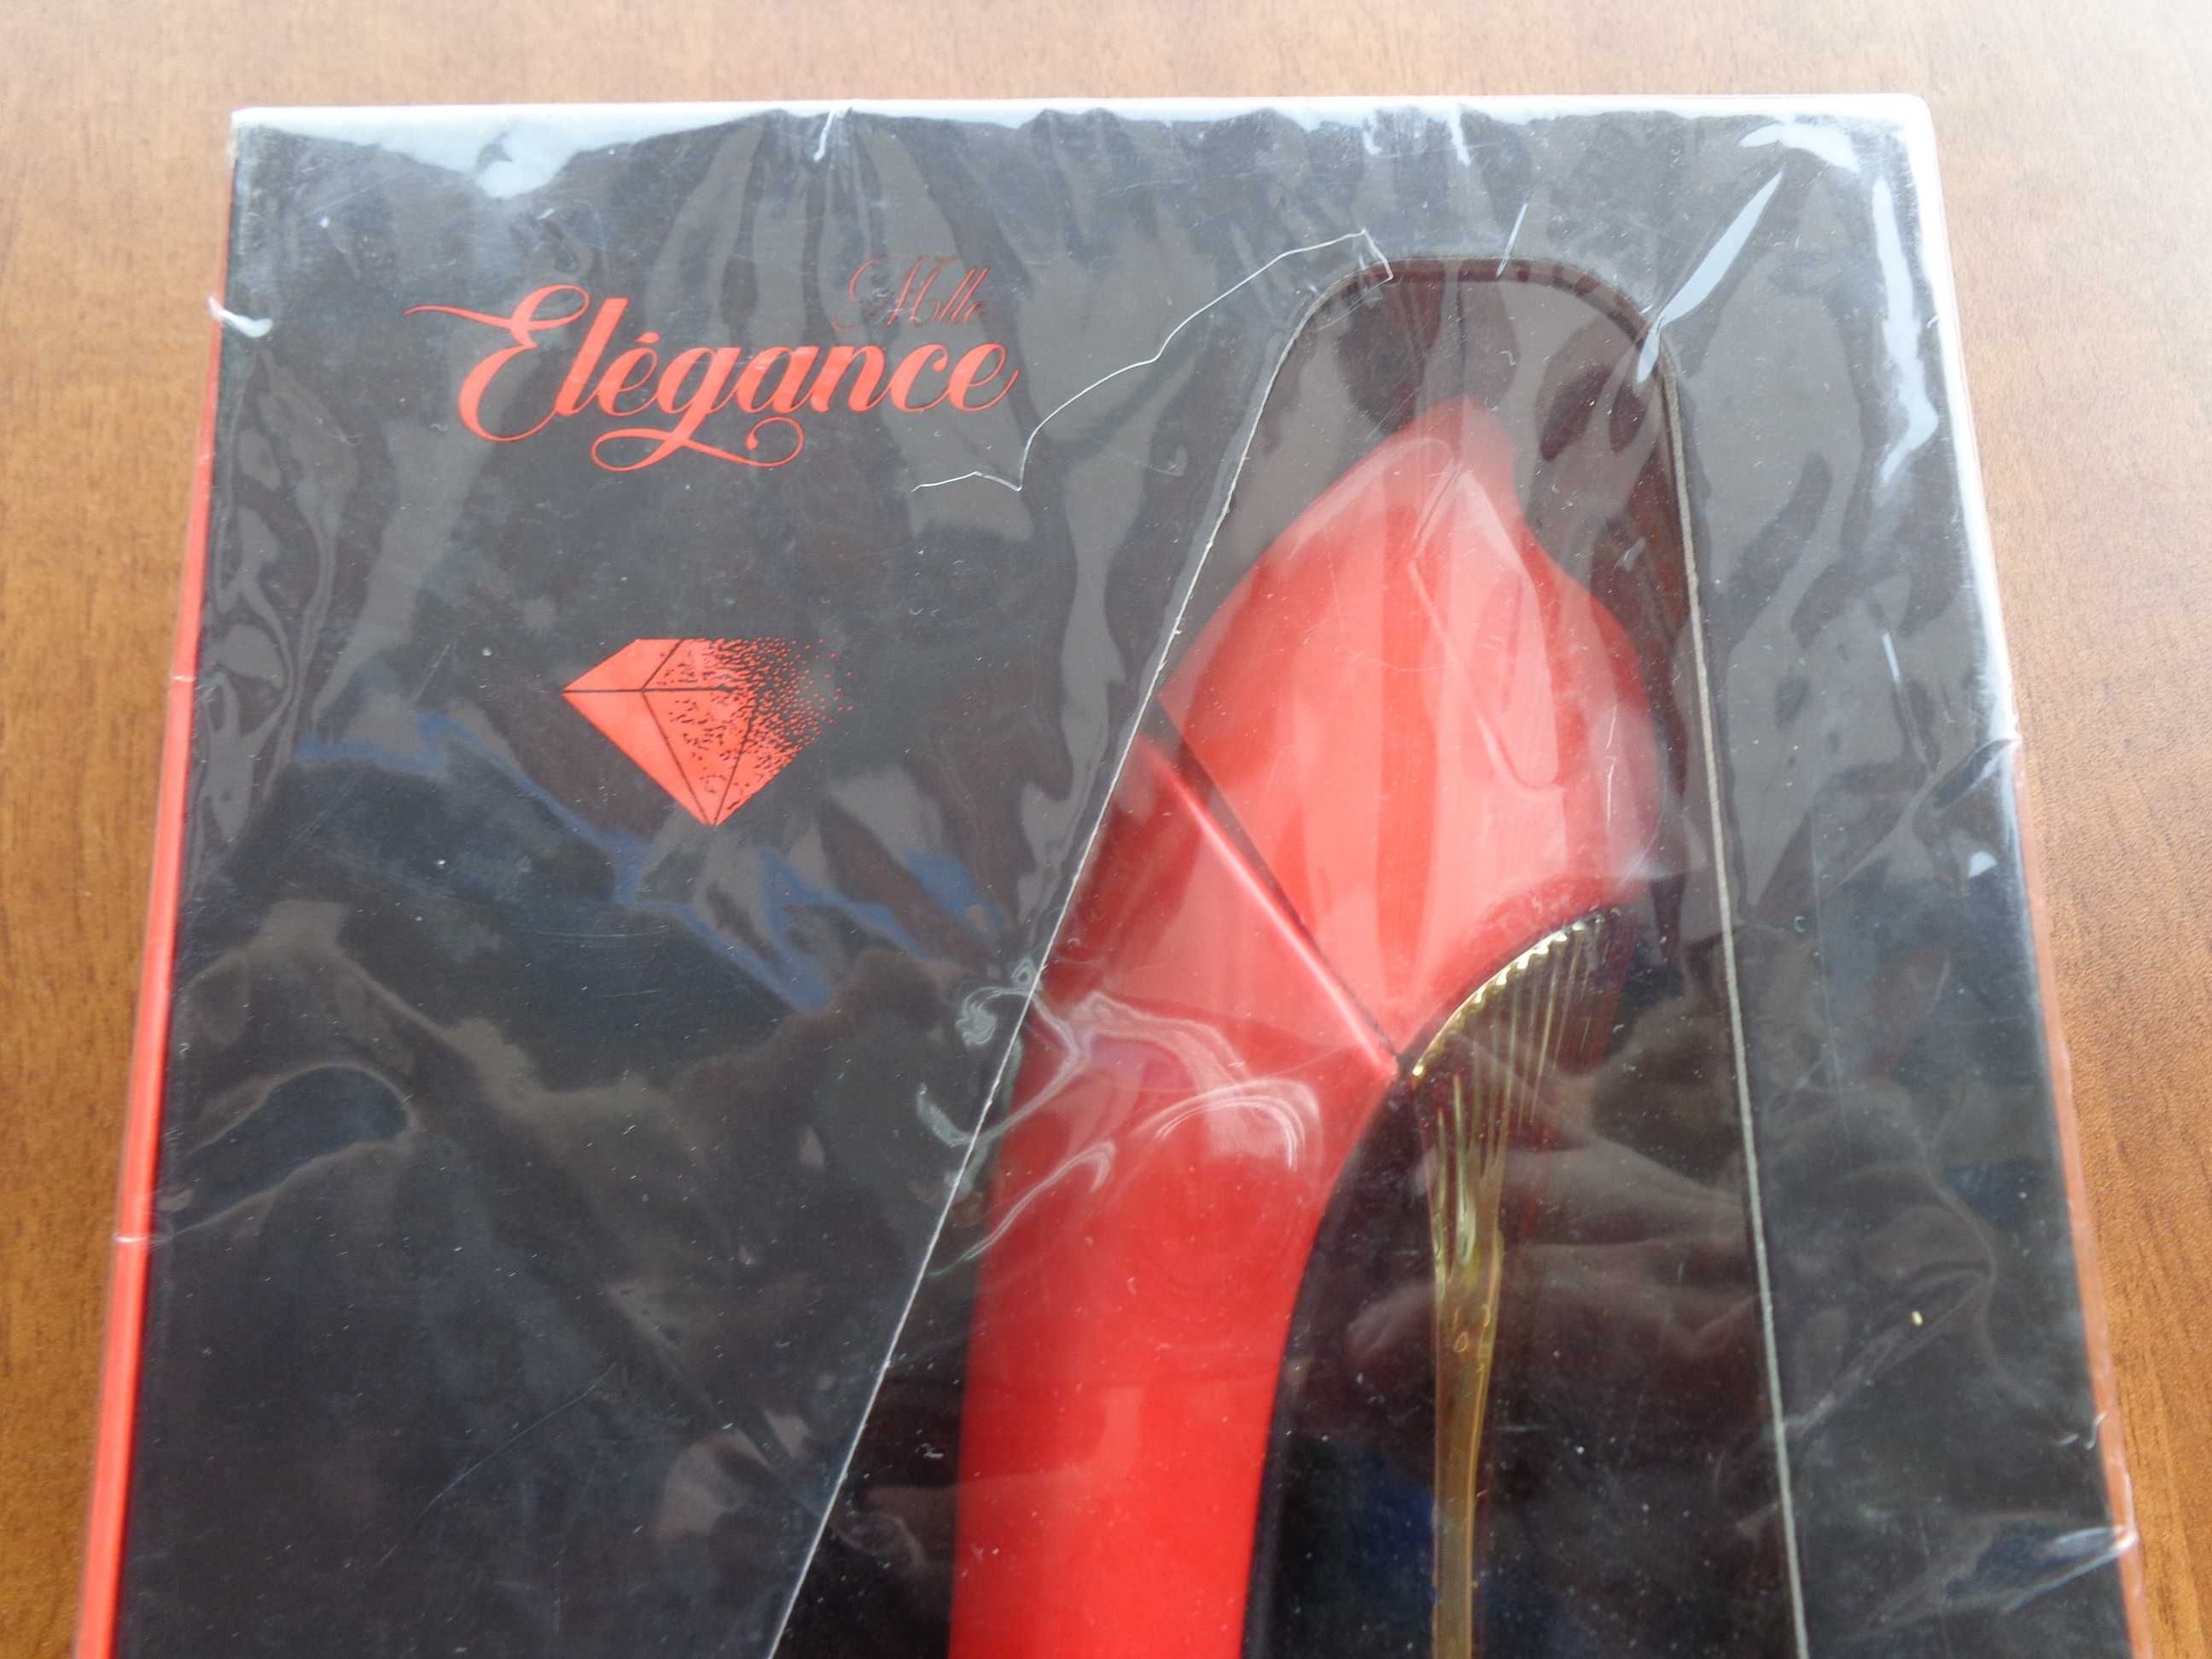 Френски дамски парфюм спрей Elegance 80ml с форма на дамска обувка